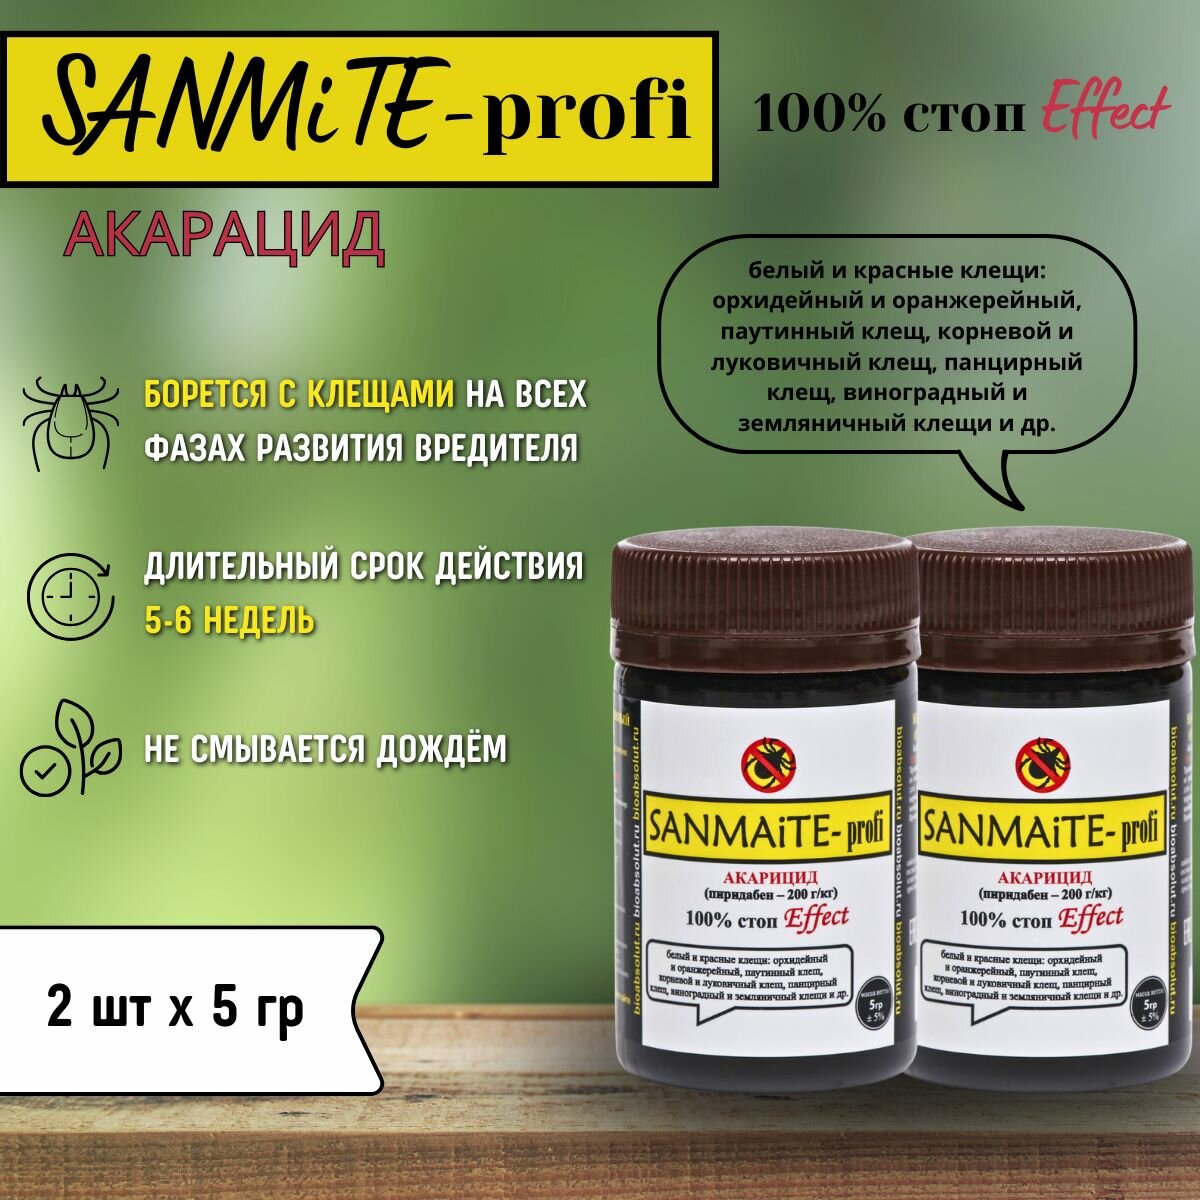 SANMiTE -profi санмайт контактный акарицид от насекомых-вредителей, 5 г * 2 шт